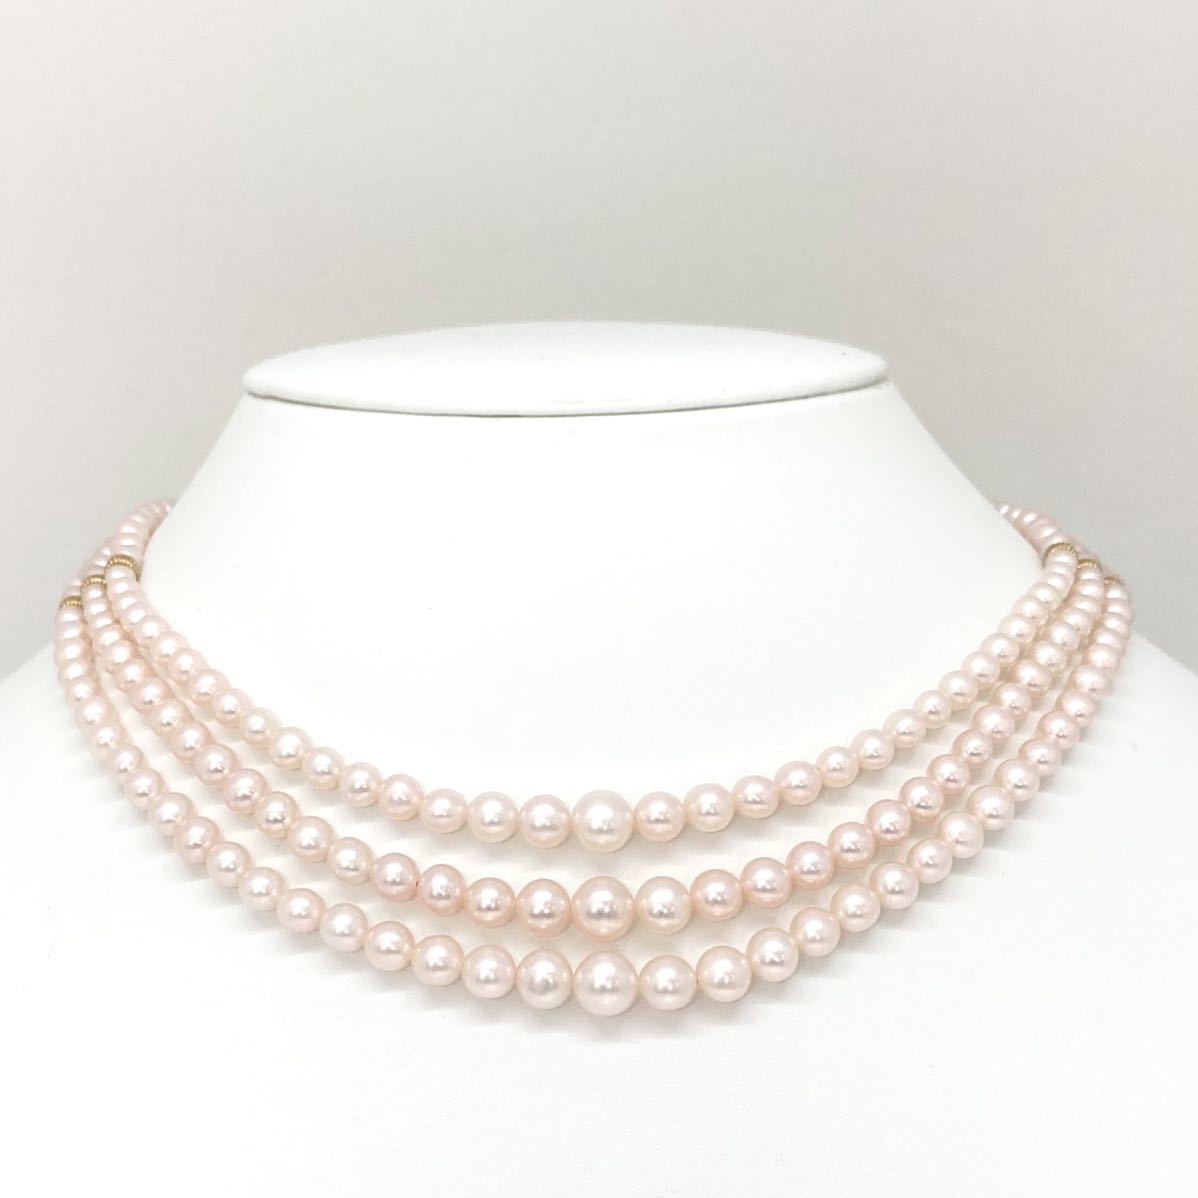 良质!!豪华!!《K14YG アコヤ本真珠3连ネックレス》3.5-6.5mm珠 34.8g 38.0cm ベビーパール baby pearl necklace EA4